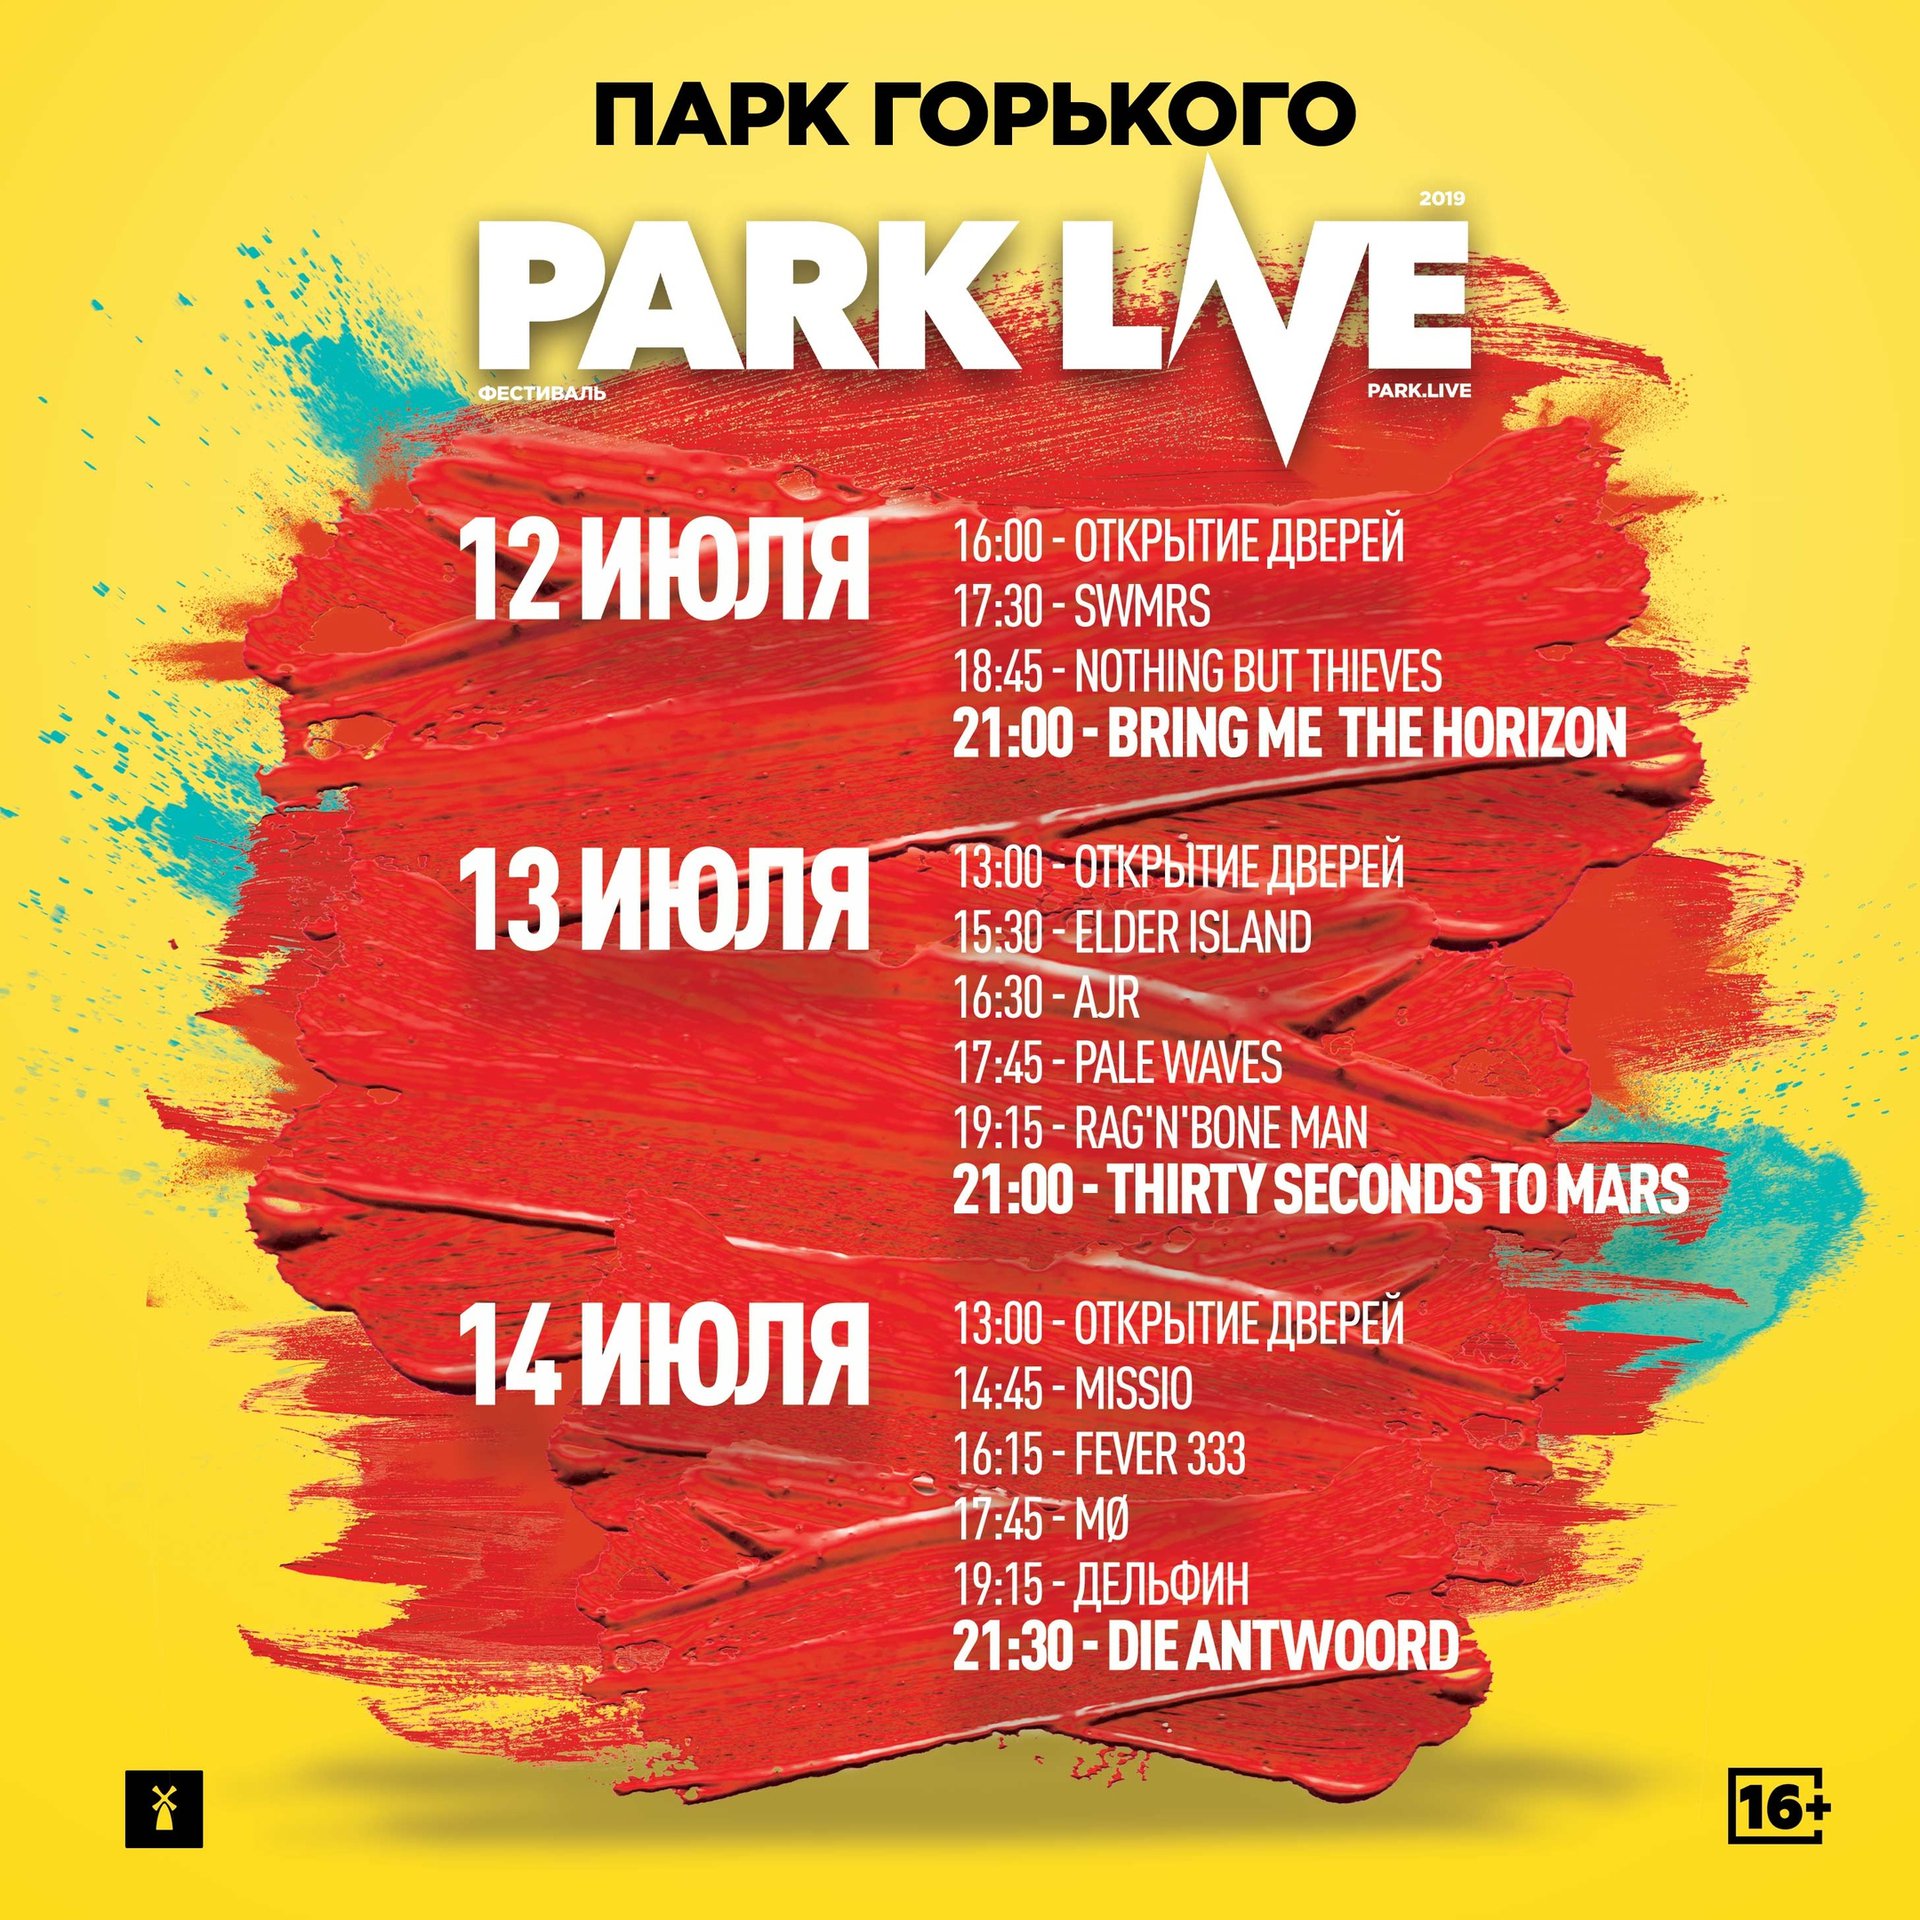 Park Live on Twitter: "Расписание Park Live 2019